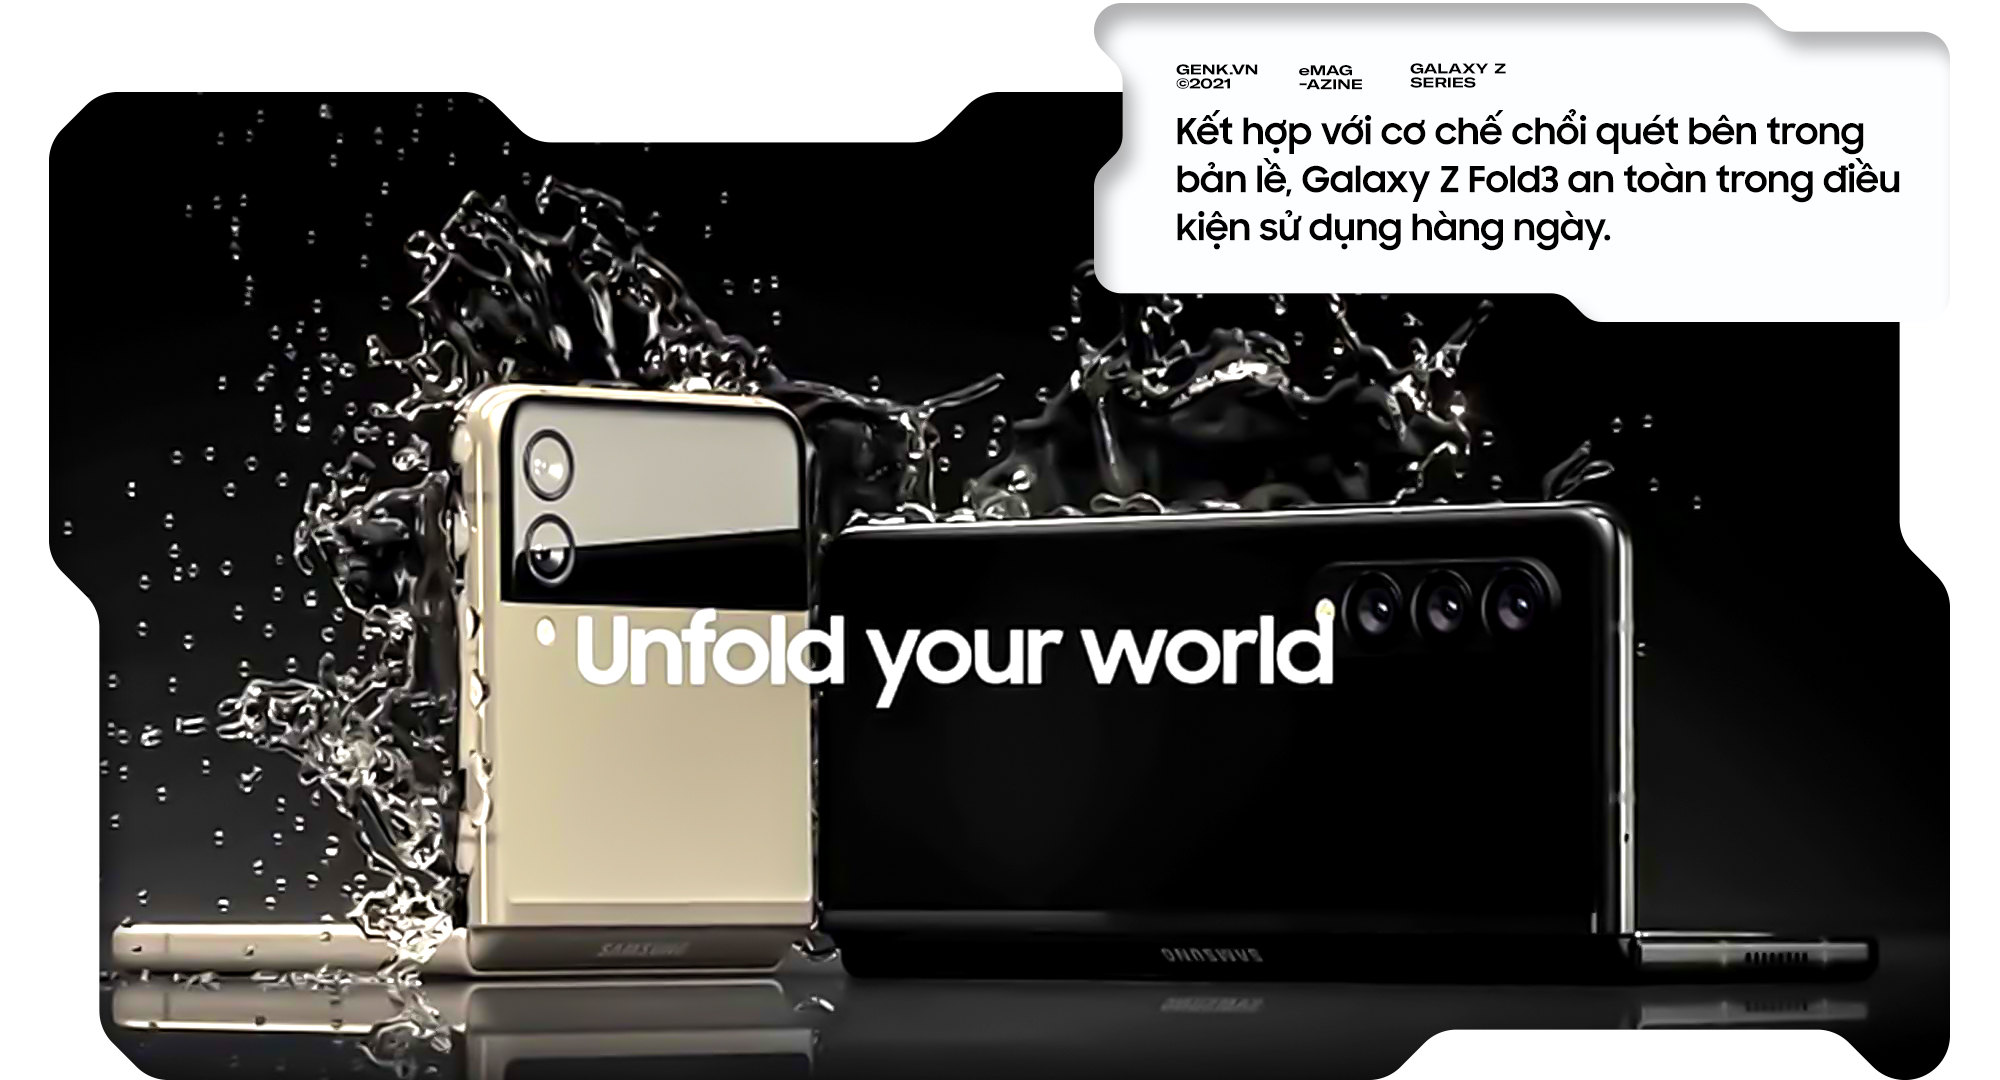 Đánh giá Samsung Galaxy Z Fold3: Khi Samsung hoàn toàn thoát khỏi cái bóng Apple - Ảnh 11.